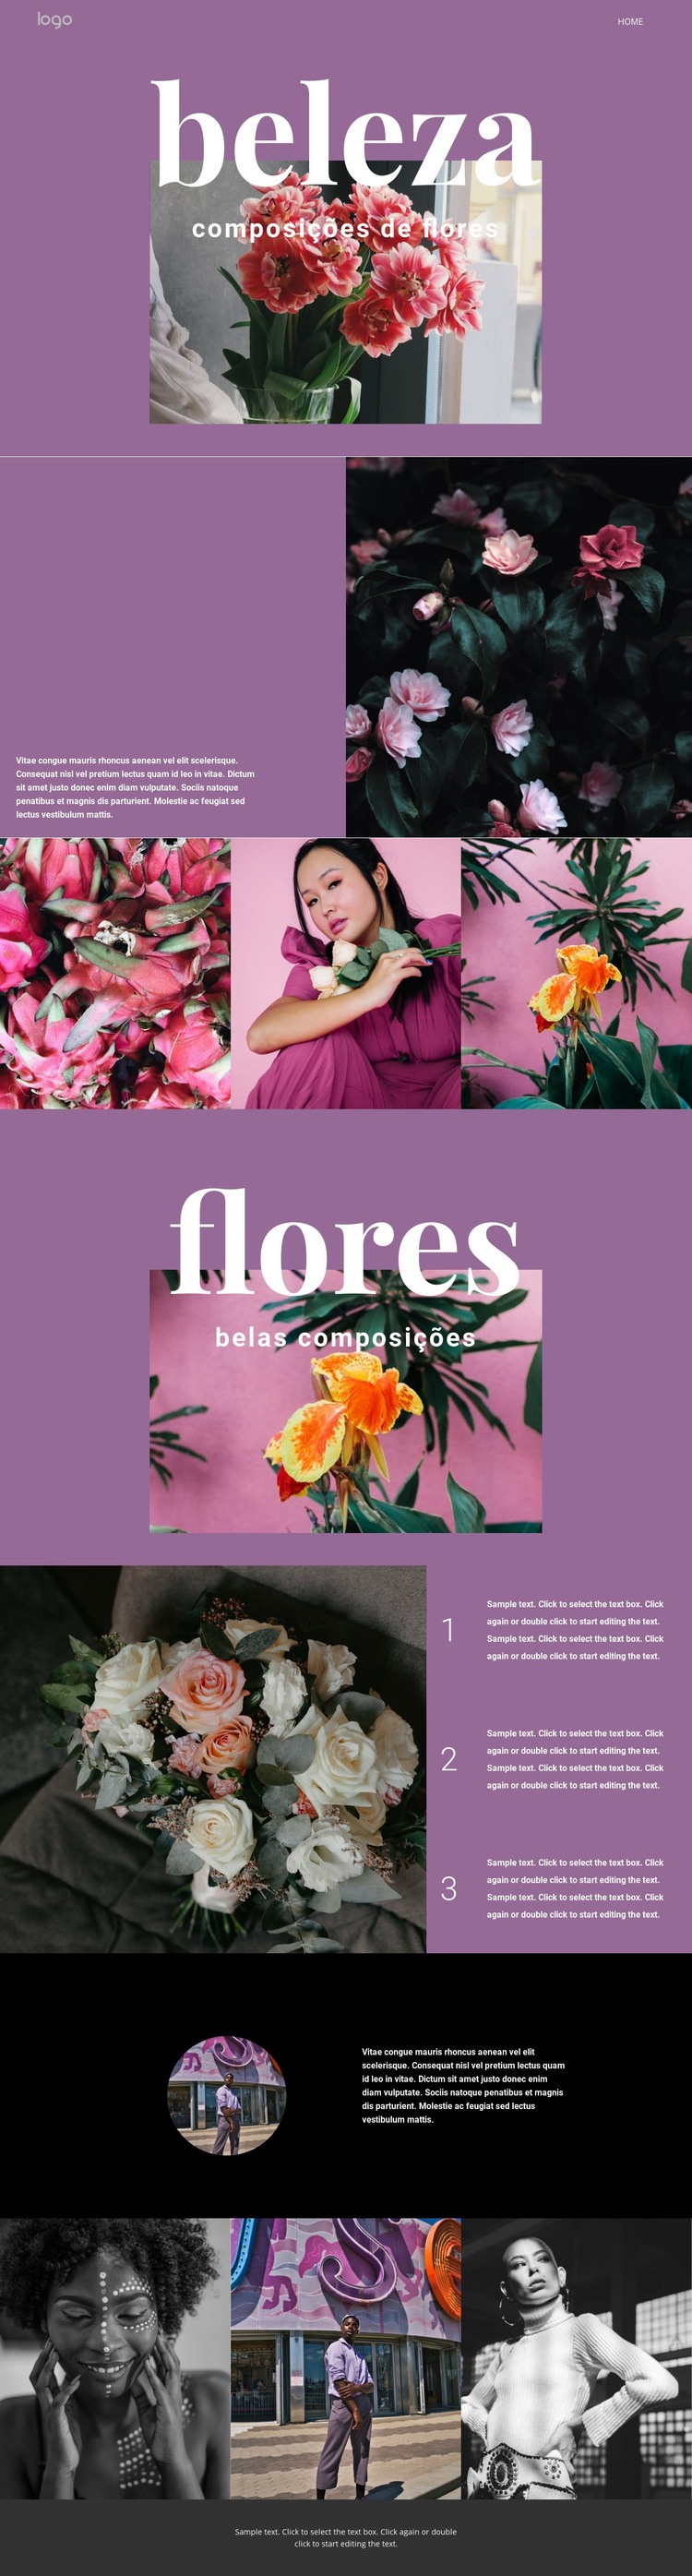 Salão de flores Design do site